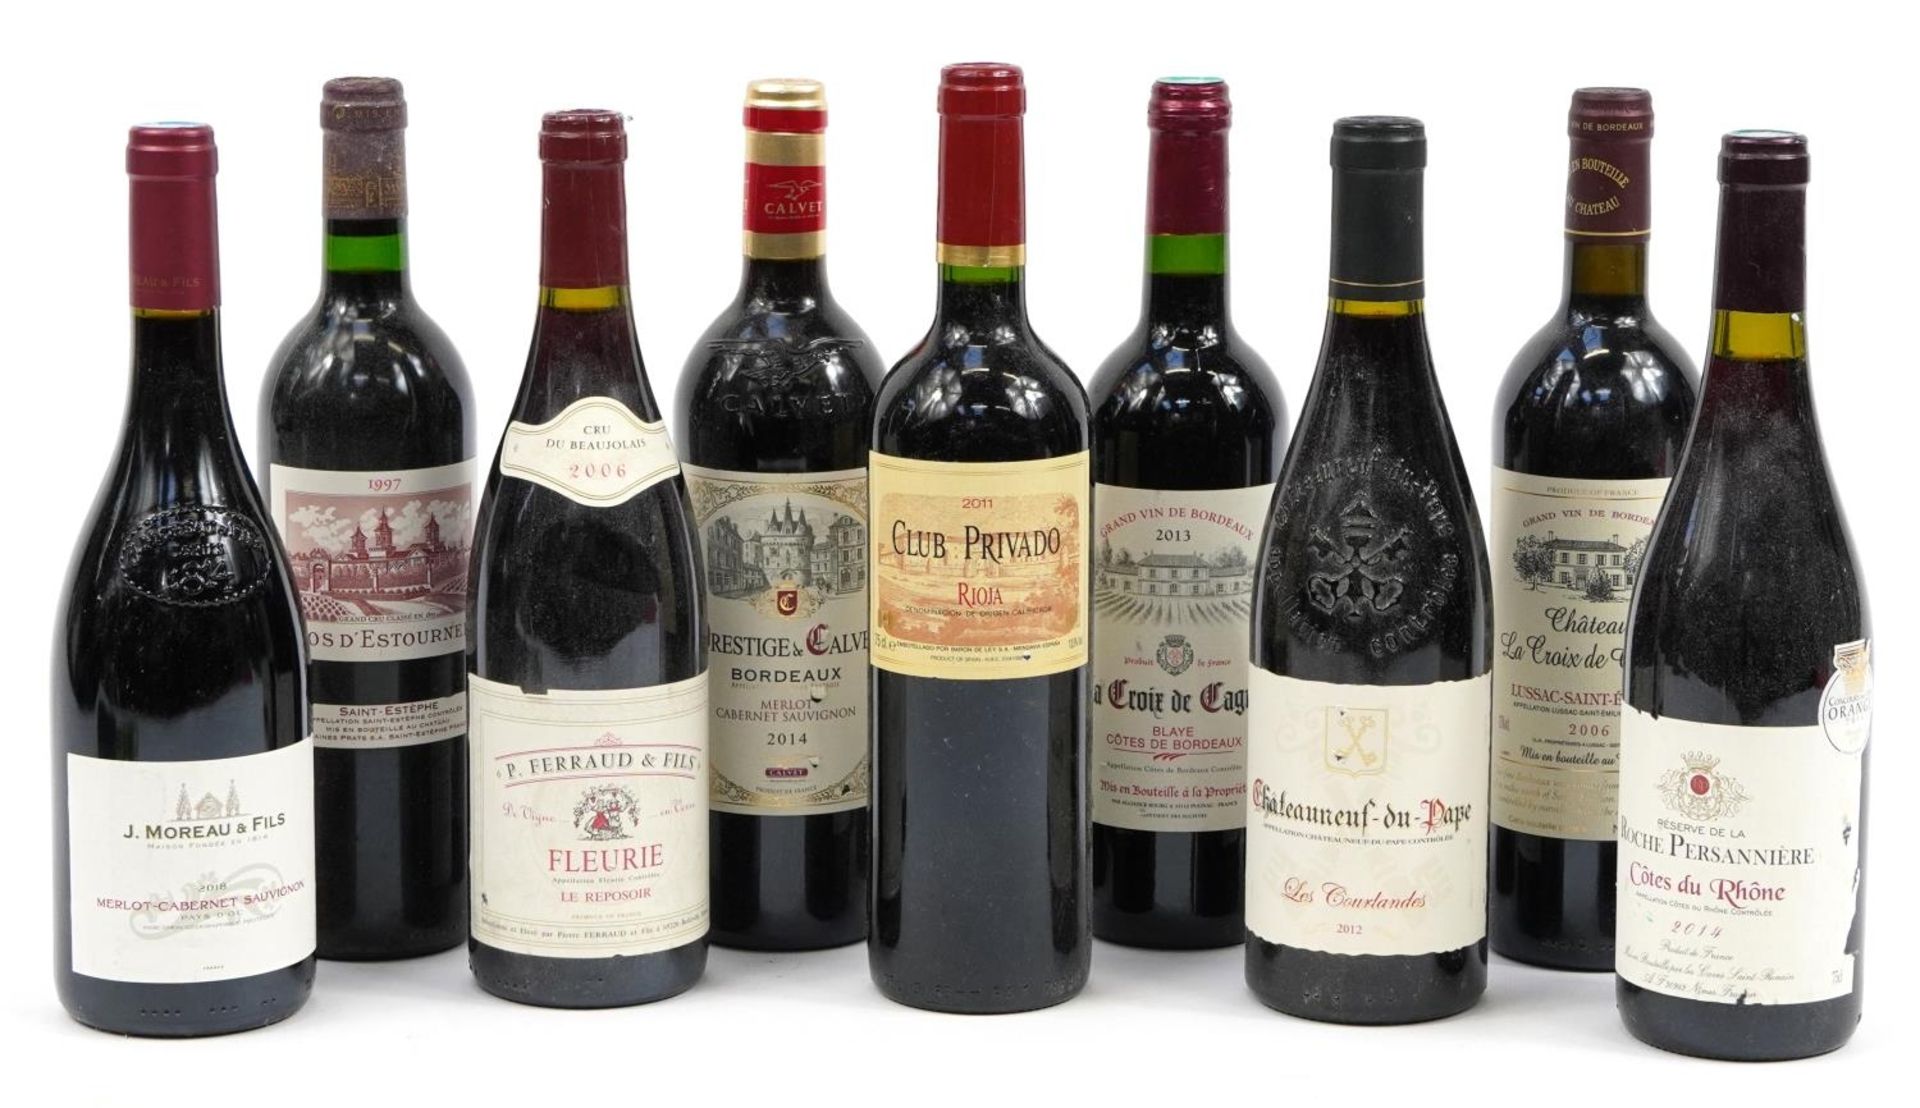 Nine bottles of red wine including Chateau Neuf du Pape, Chateau la Croix de Grezard Saint